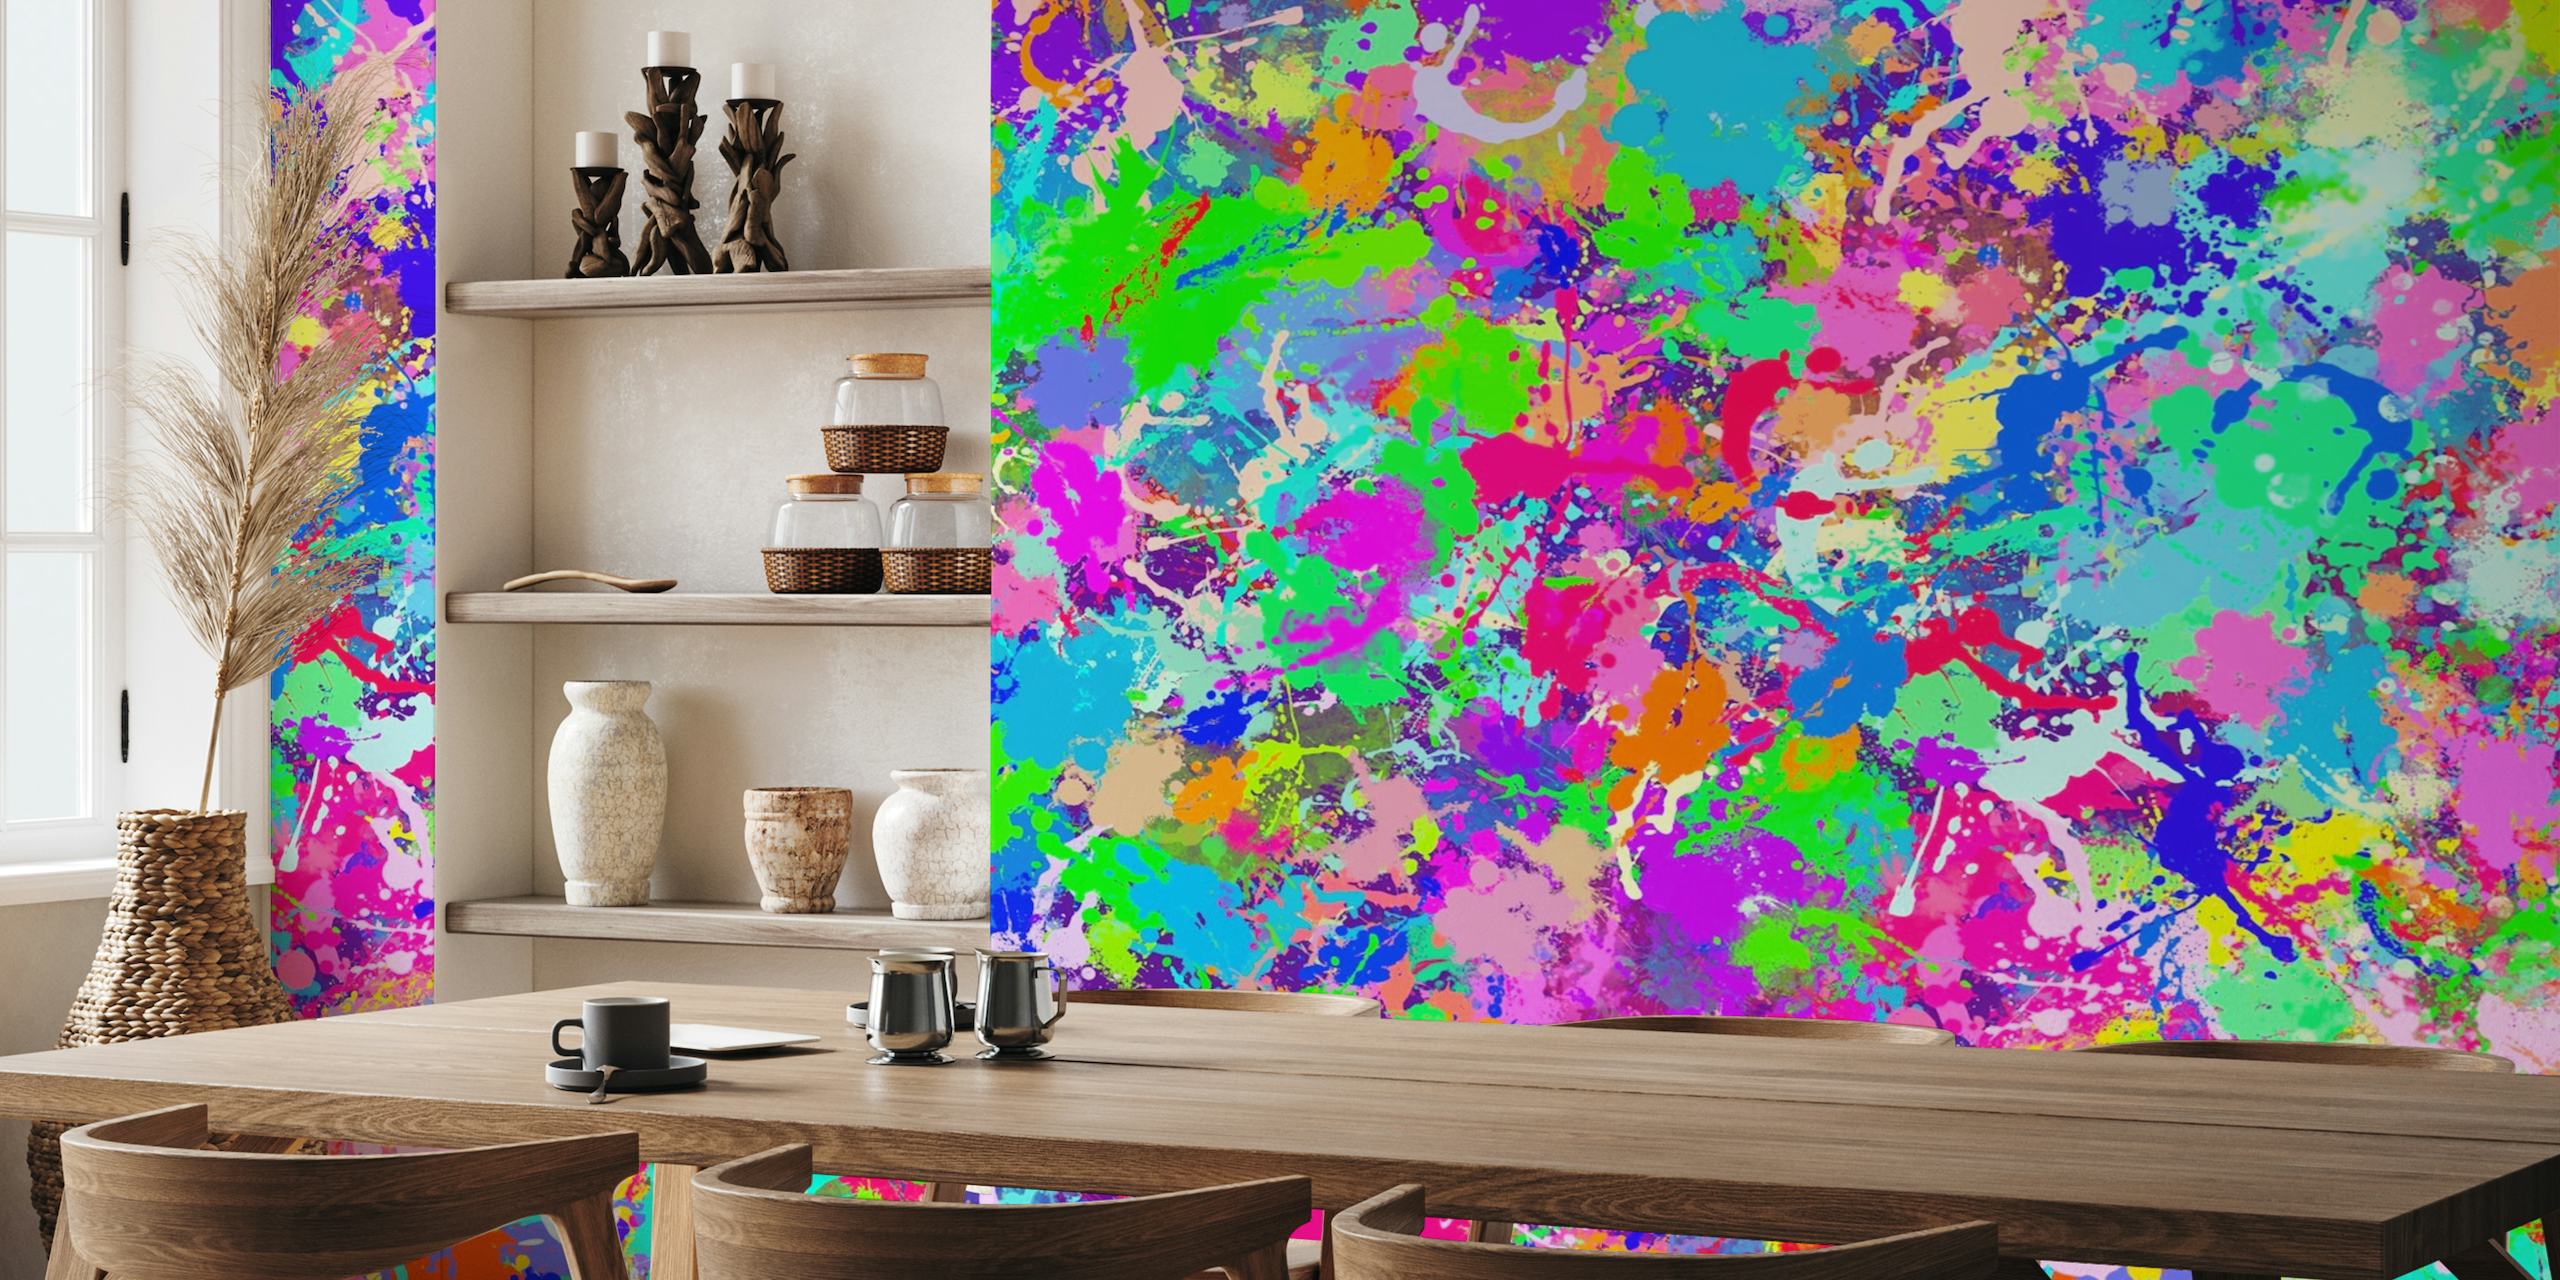 Fotomural vinílico colorido de pintura abstrata com tons vibrantes de rosa, azul, verde e amarelo